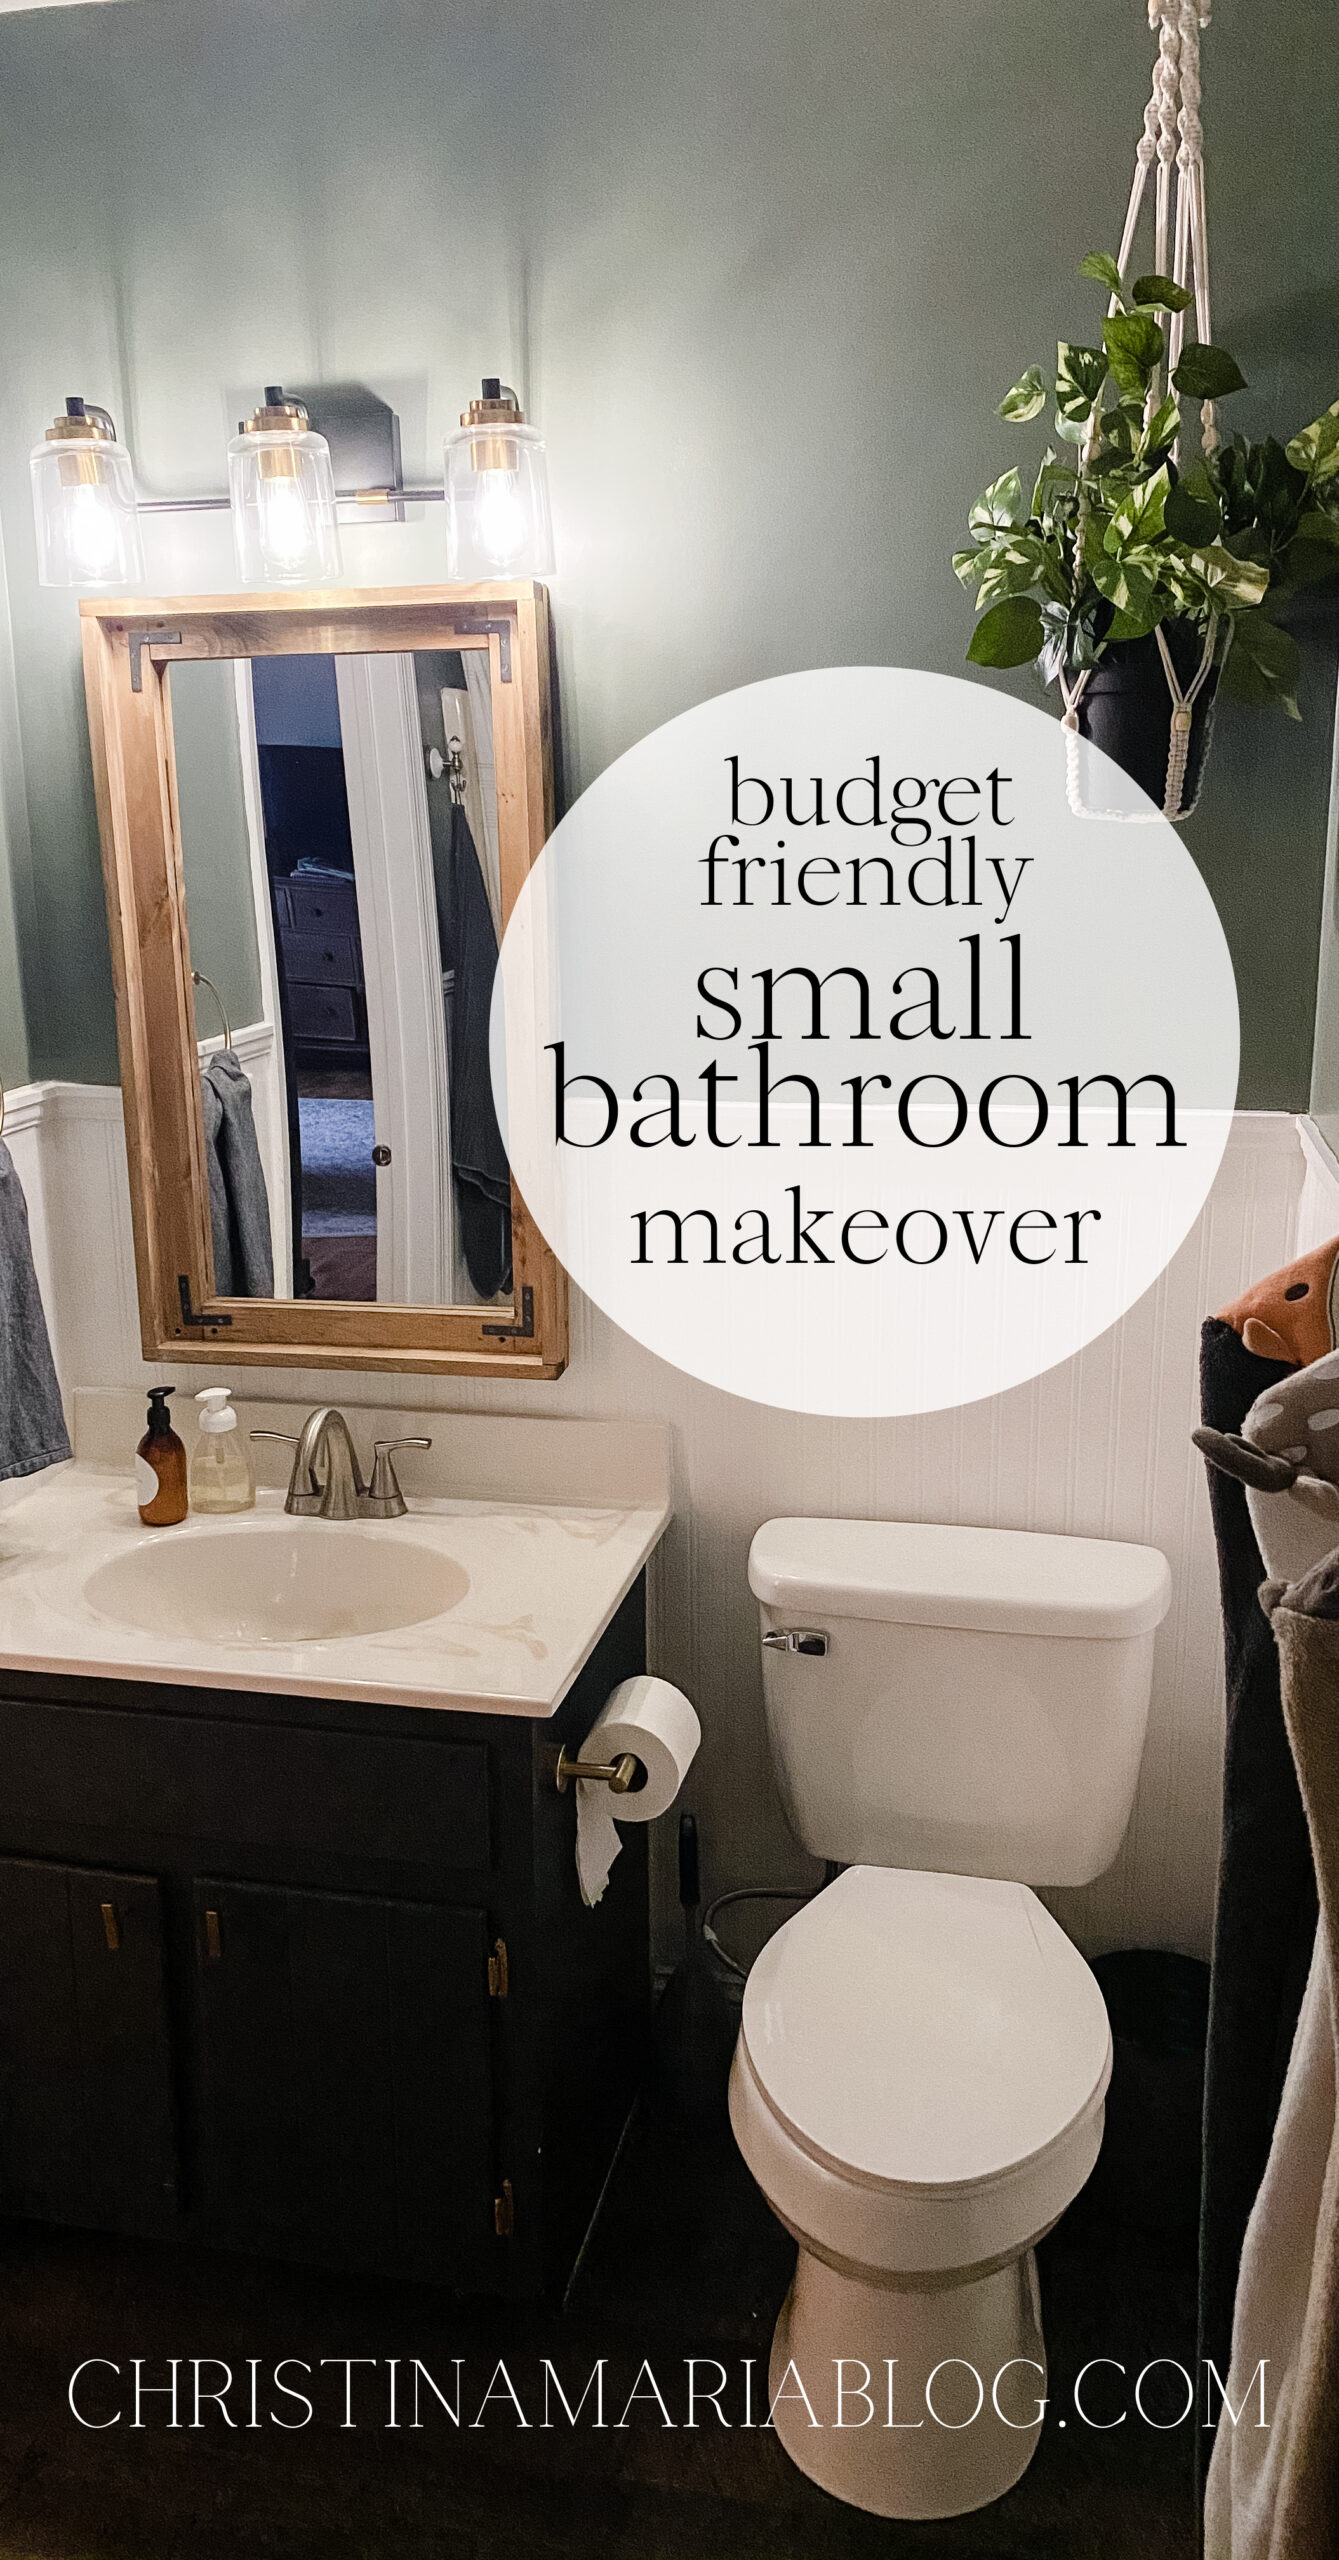 Budget friendly small bathroom makeover - Christina Maria Blog